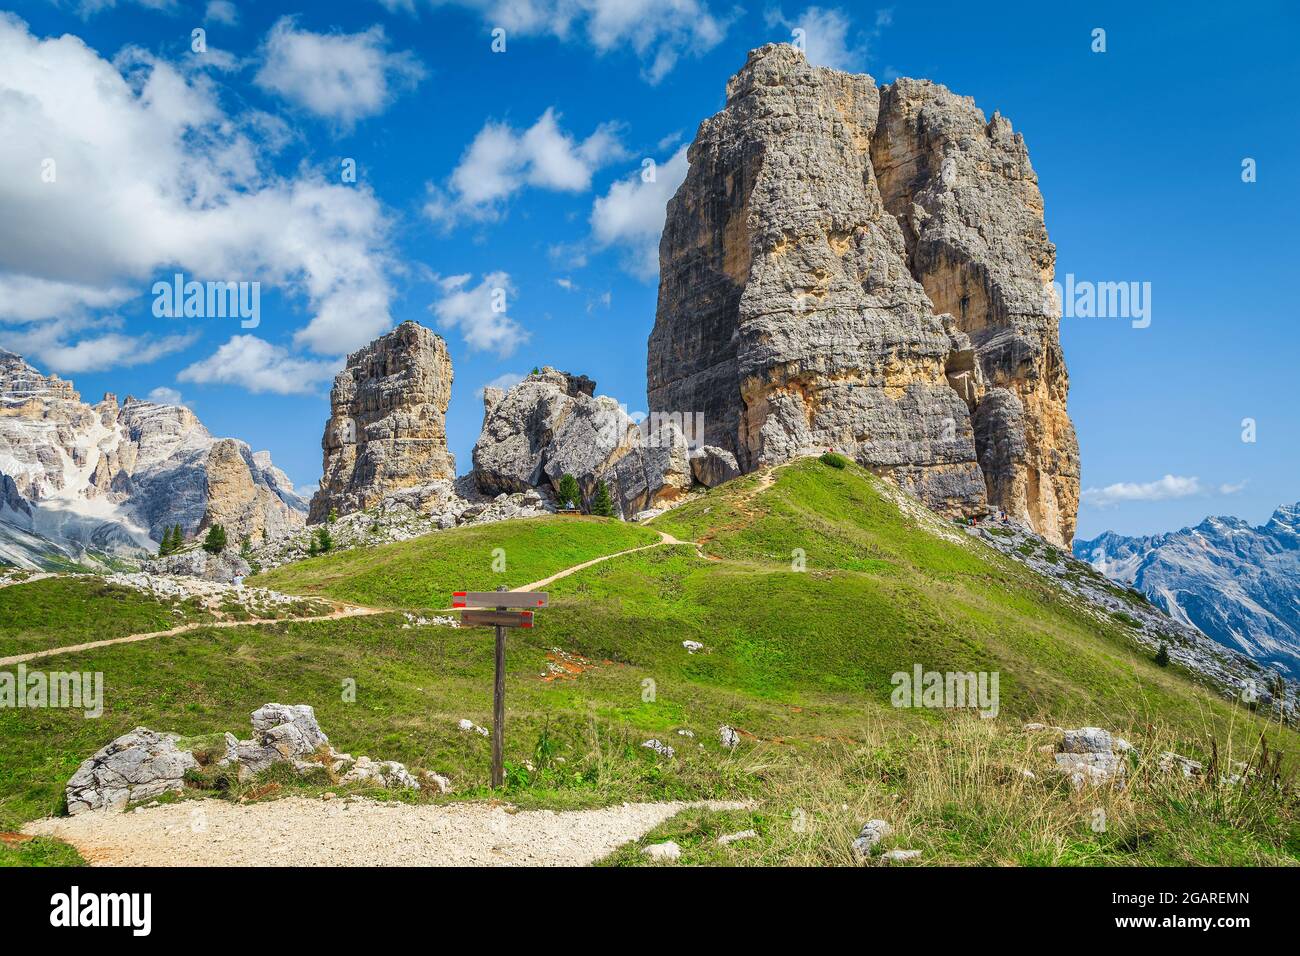 Paesaggi montani con maestose formazioni rocciose delle cinque Torri. Cartelli in legno per escursioni e cartelli di direzione nei pressi di sentieri escursionistici, Dolomiti, Italia, Europass Foto Stock